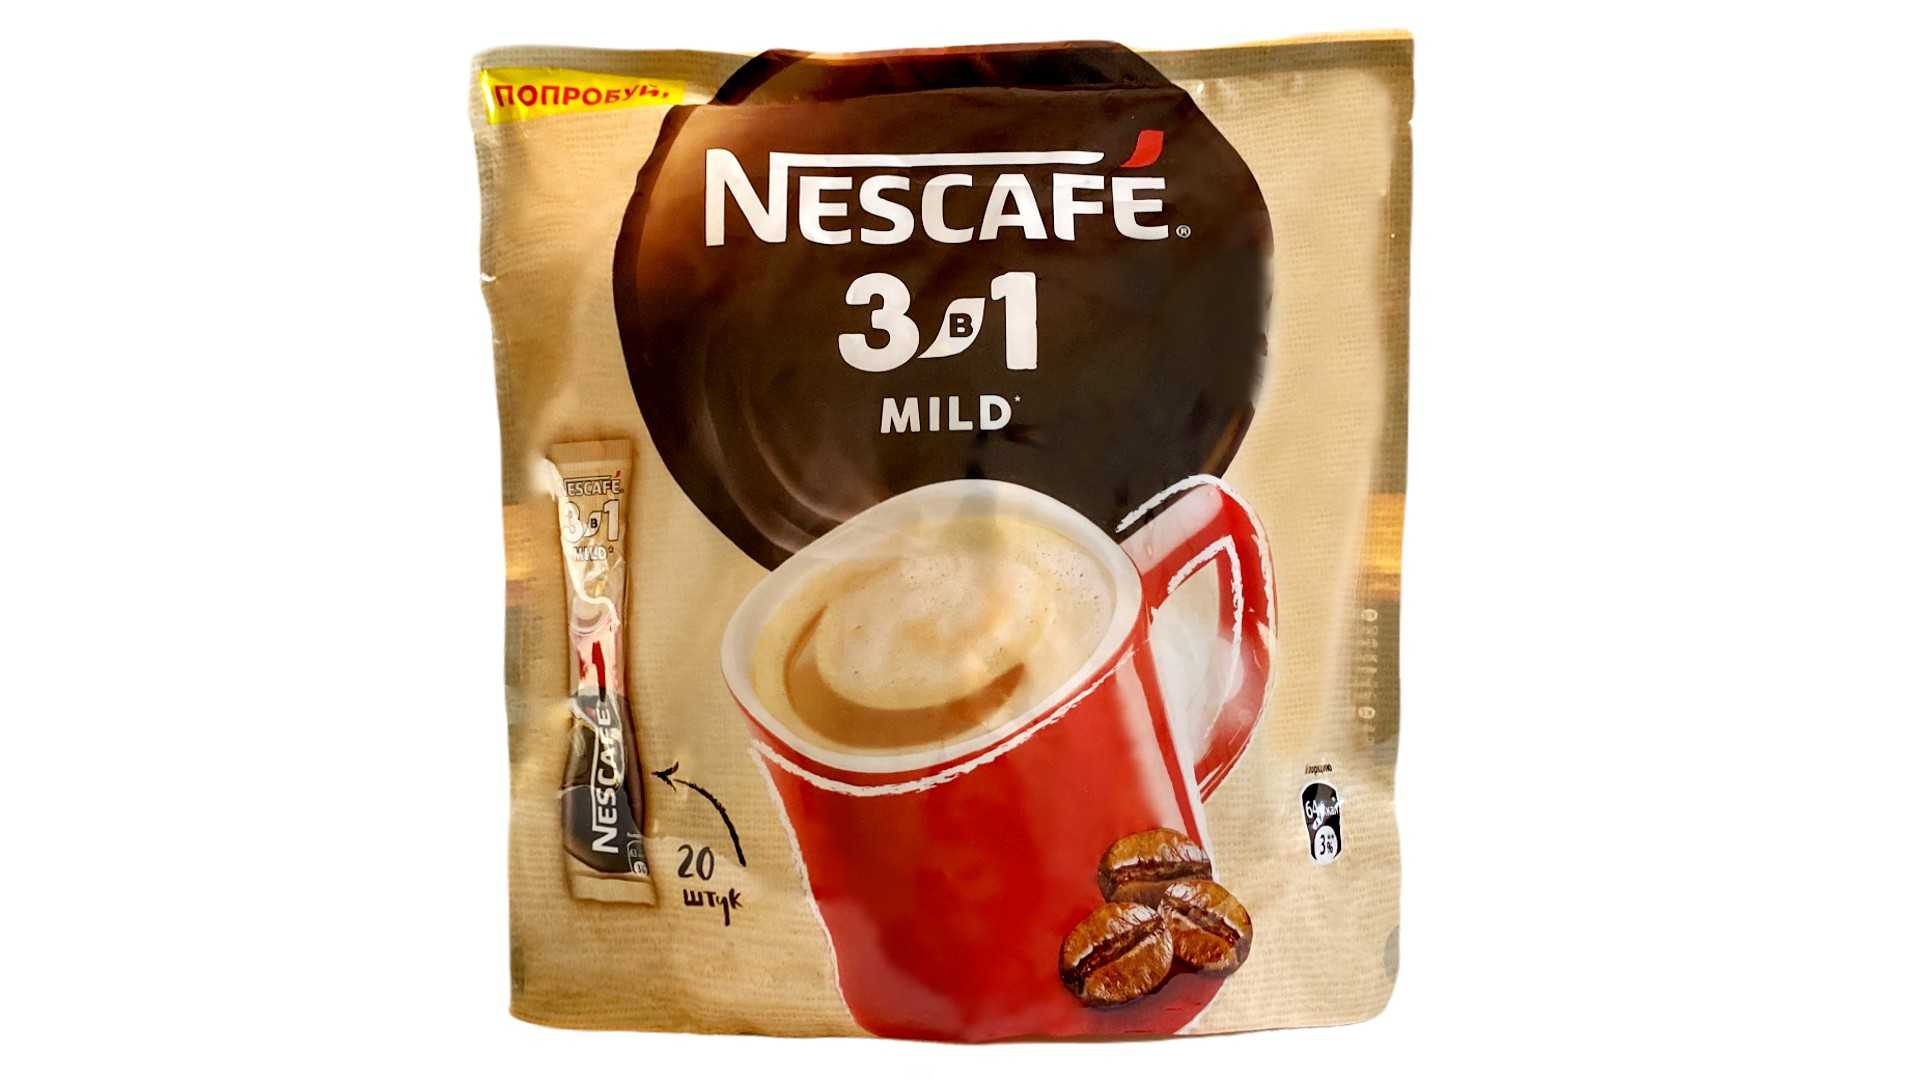 Nescafe 3в1. Nescafe 3 в 1 mild. Кофе 3 в 1 Нескафе. Nescafe mild кофе 3в1. Кофе растворимый Nescafe 3в1 мягкий (Нескафе), 20 стиков.